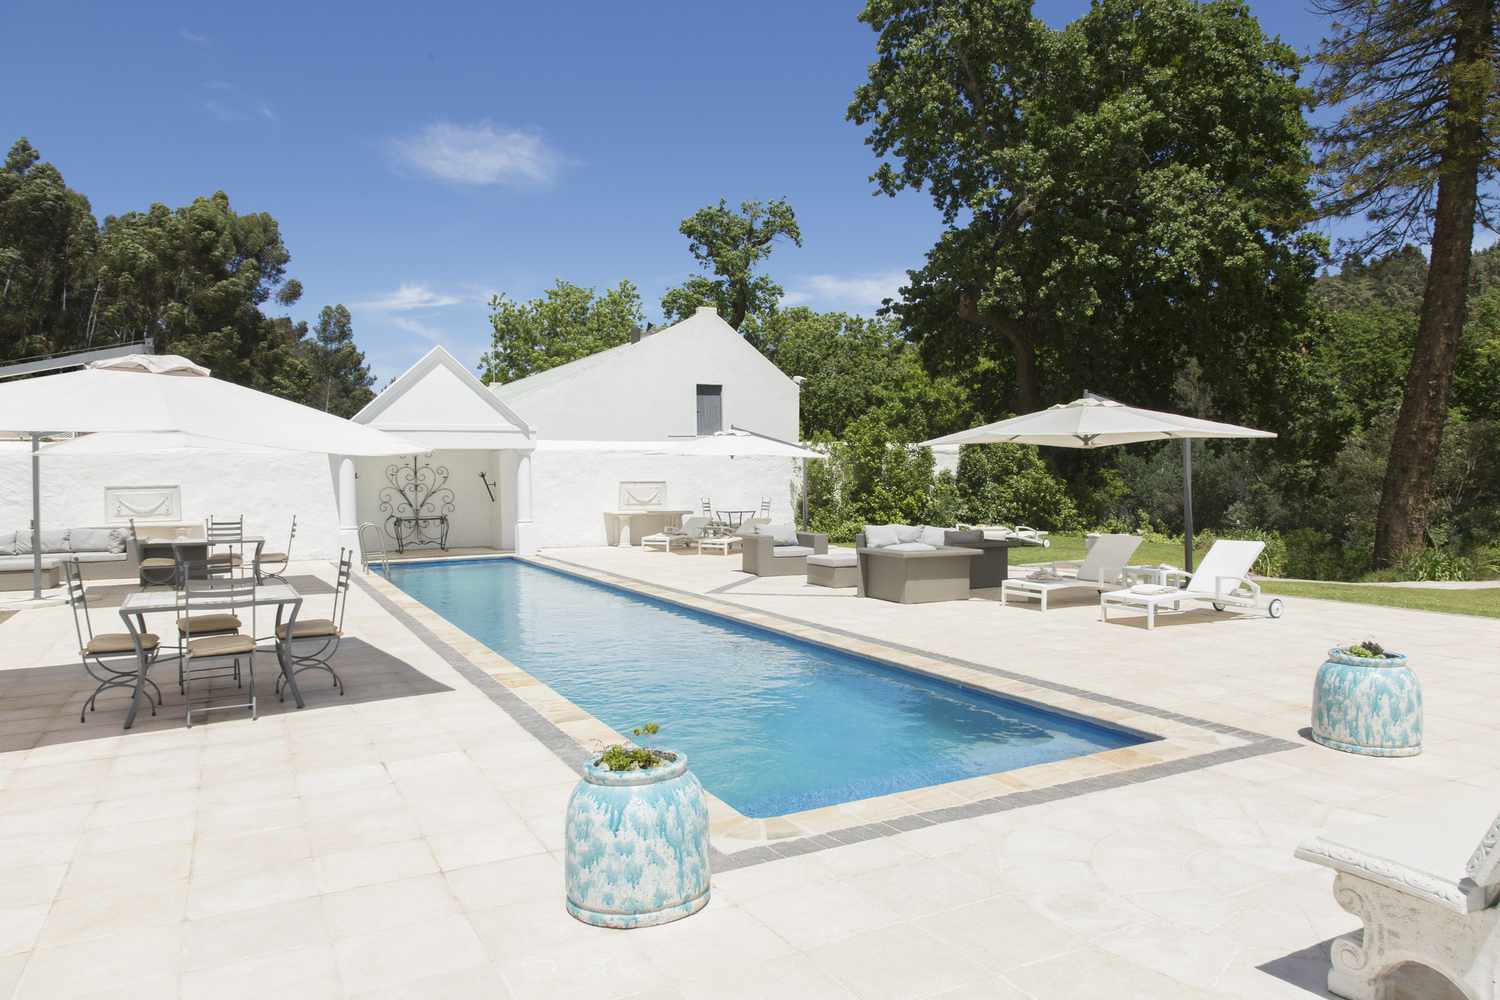 Una piscina con azulejos blancos, muebles de jardín y sombrillas blancas.